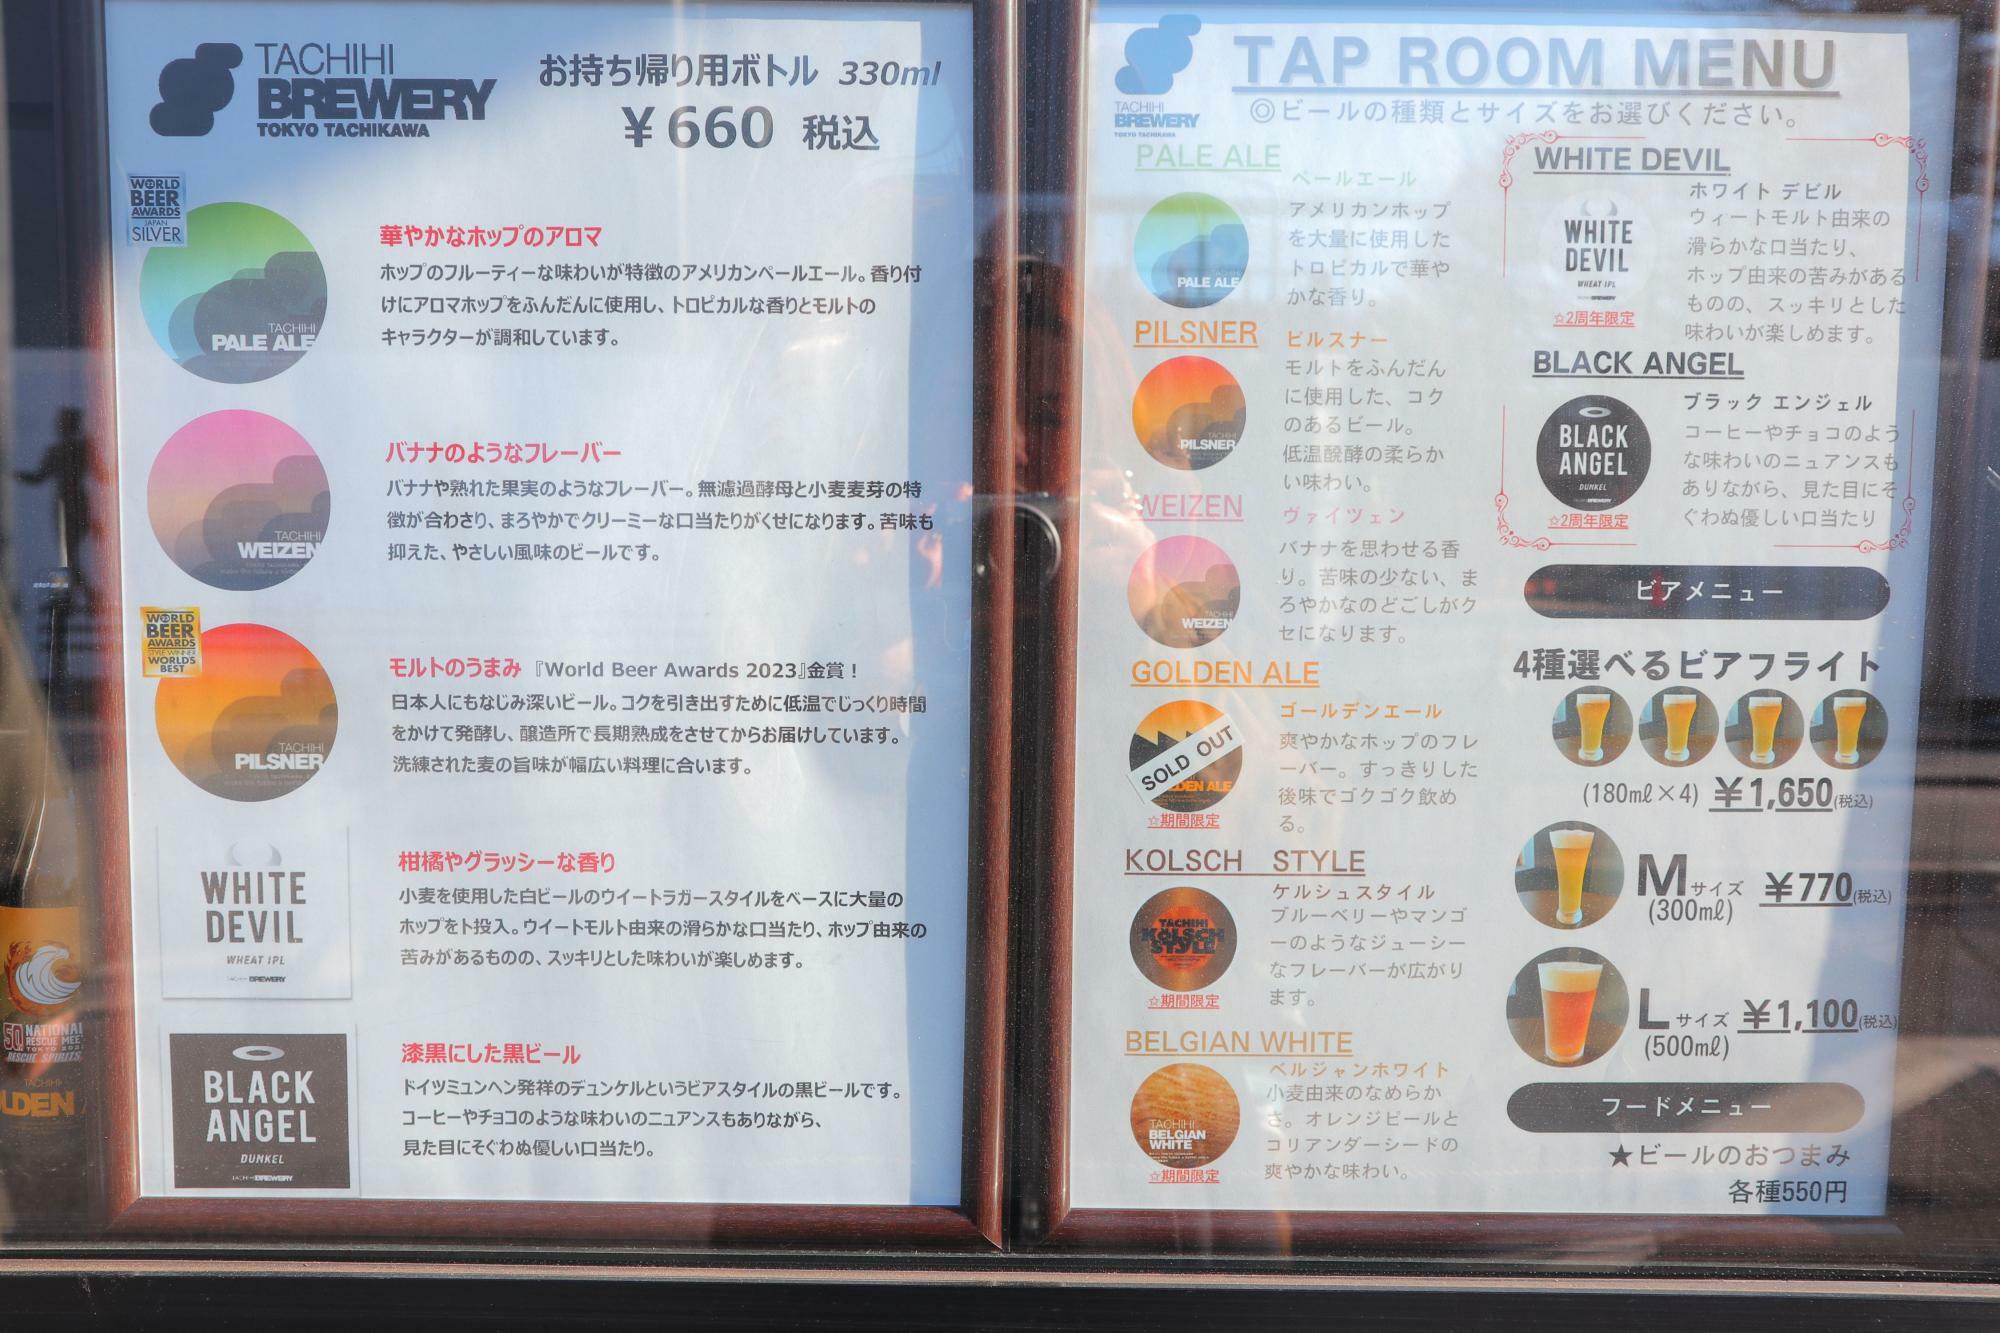 展開されているビールの特徴が書かれたメニュー表